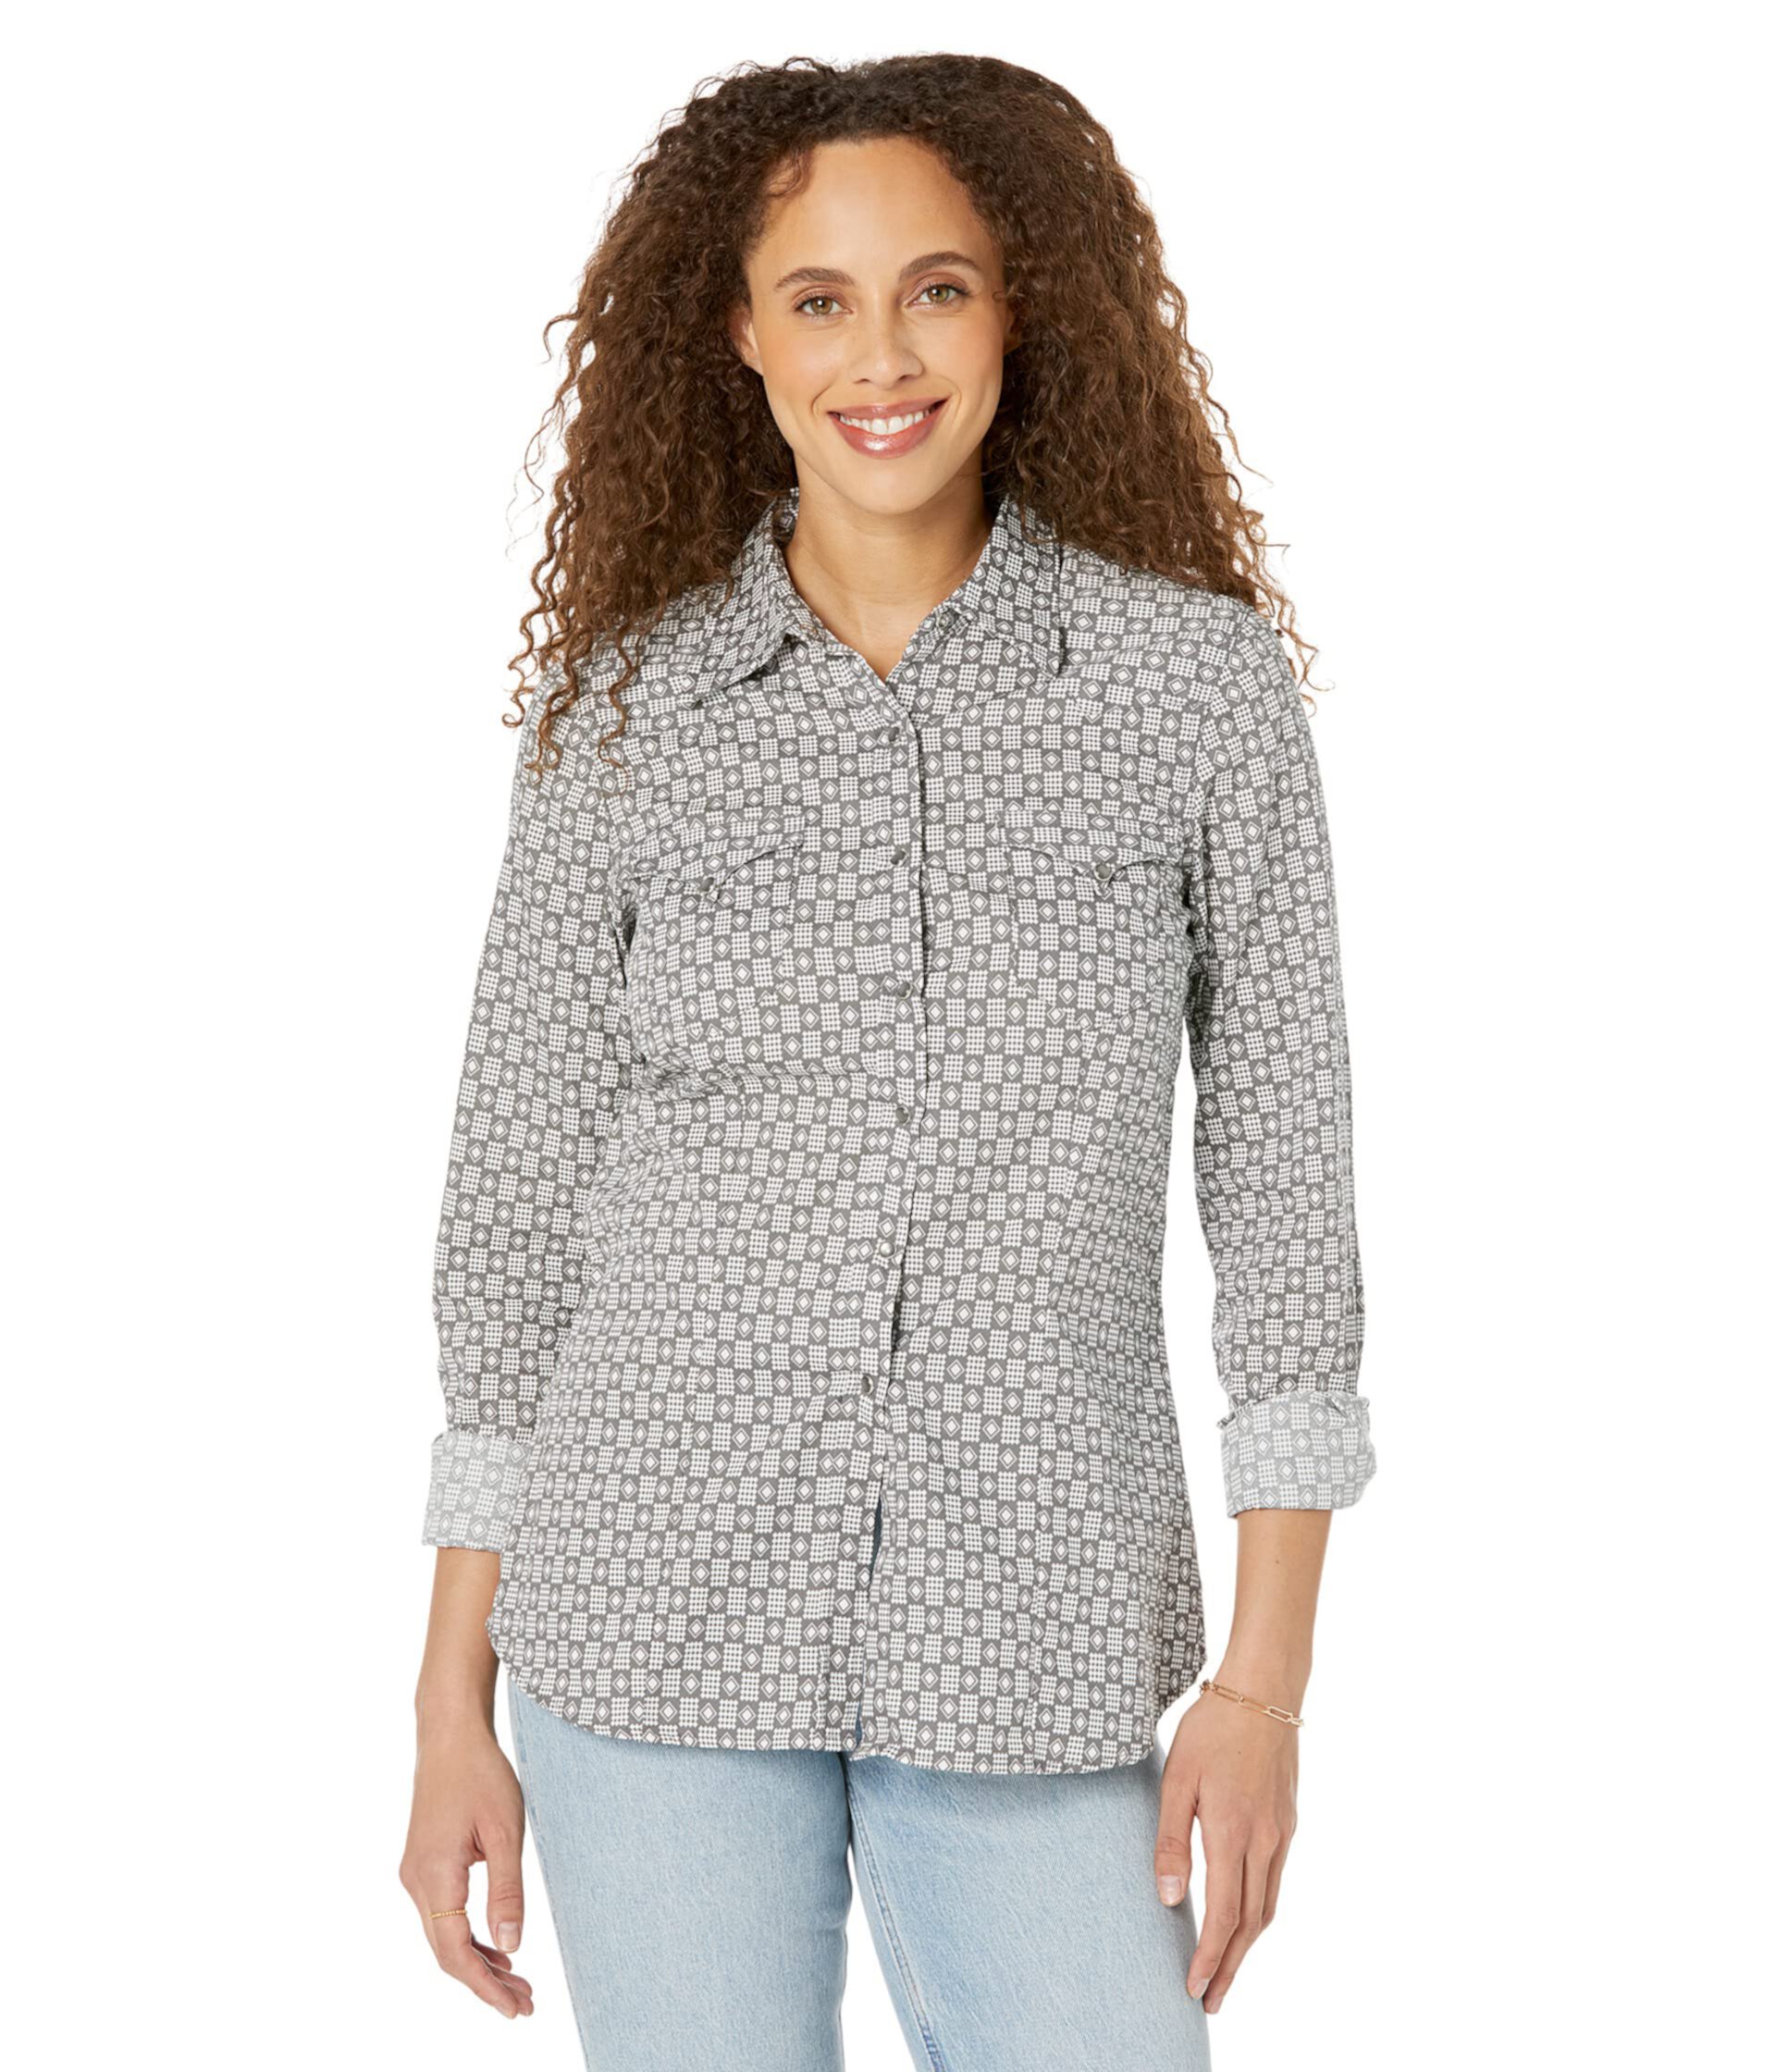 Серая клетчатая блуза в стиле вестерн с ромбовидным принтом на кнопках Roper